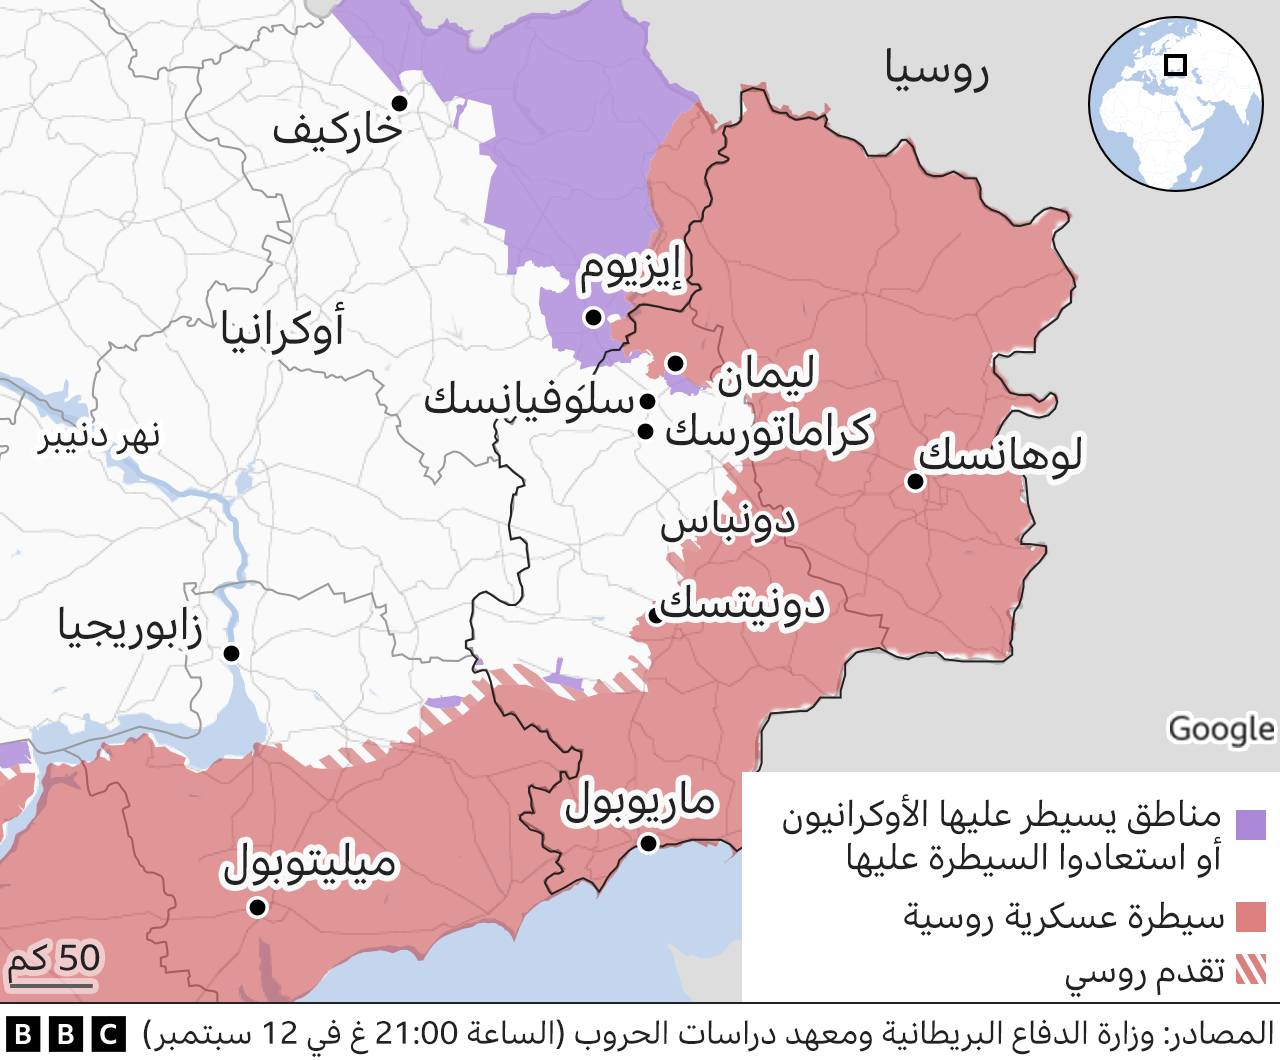 خريطة توضح المناطق الخاضعة لسيطرة اوكرانيا والتي استعادت السيطرة عليها مؤخراً.